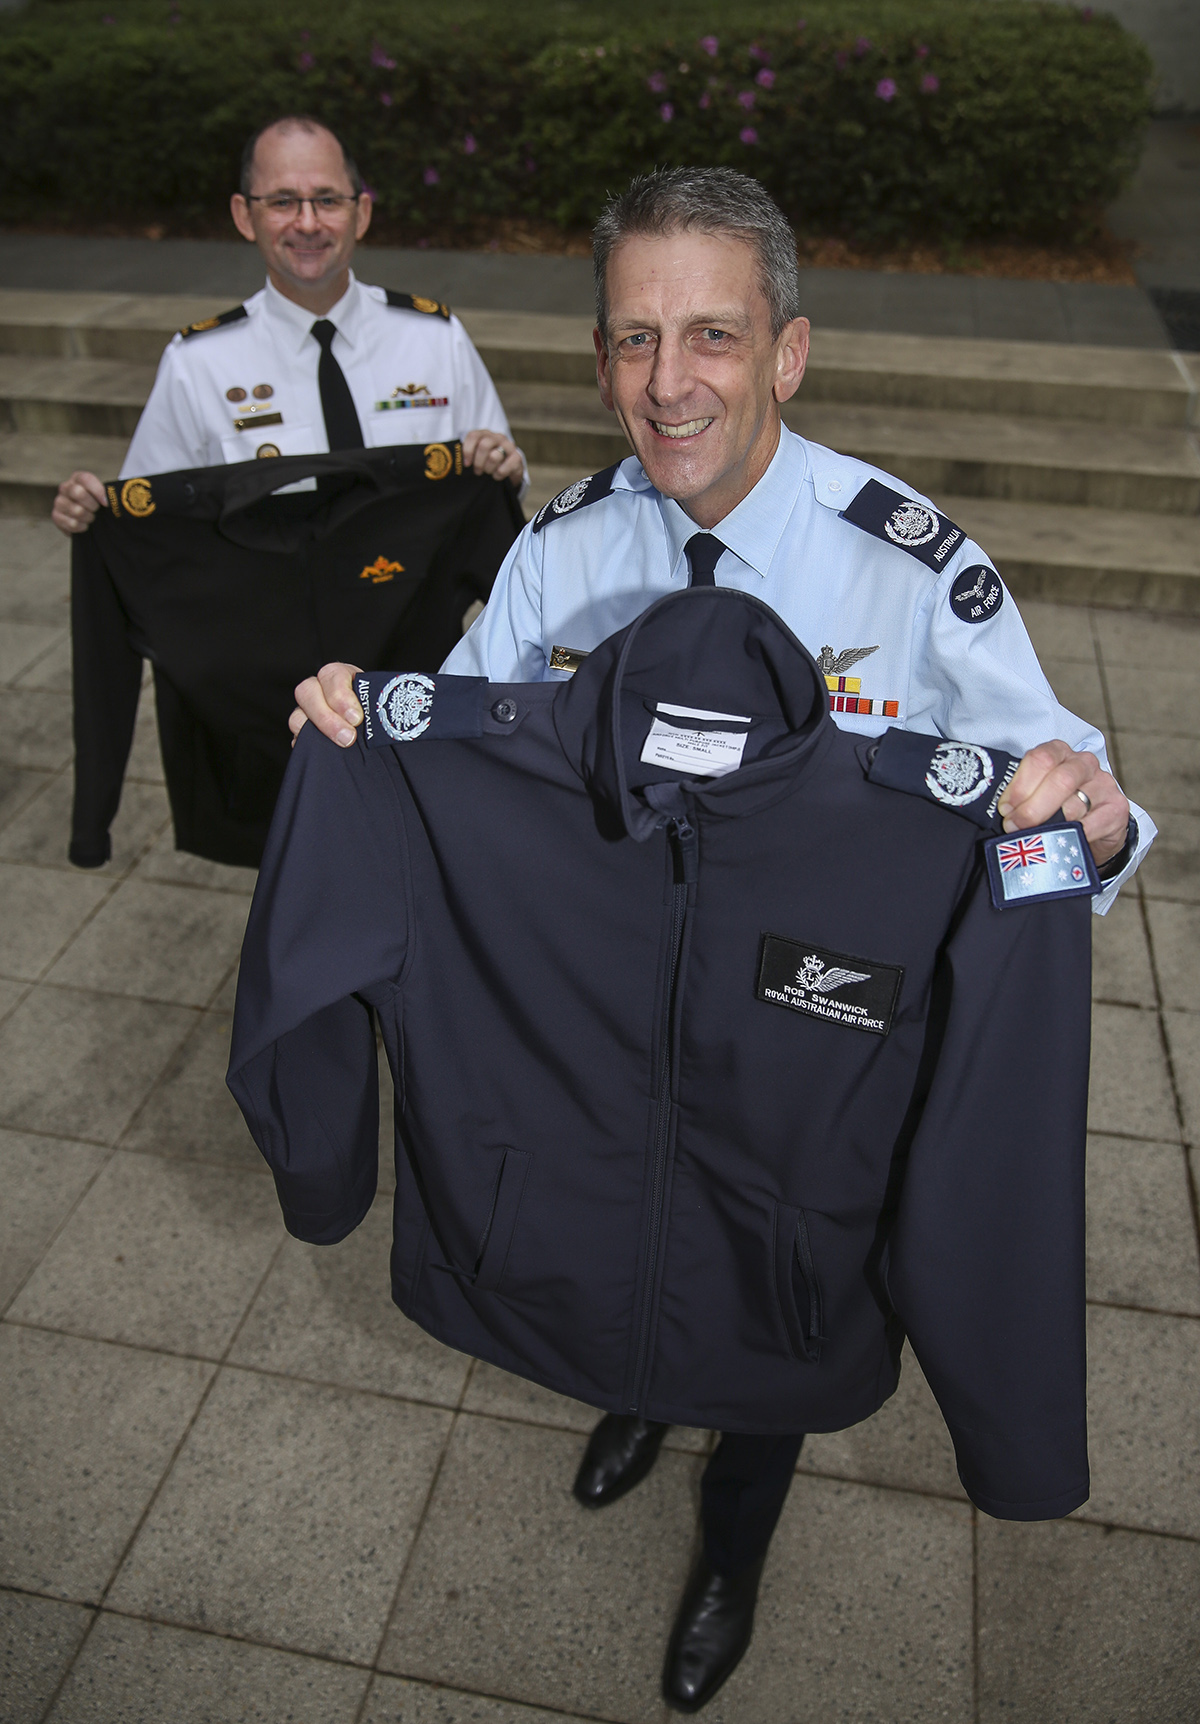 News Release: Platypus release RAAF jacket